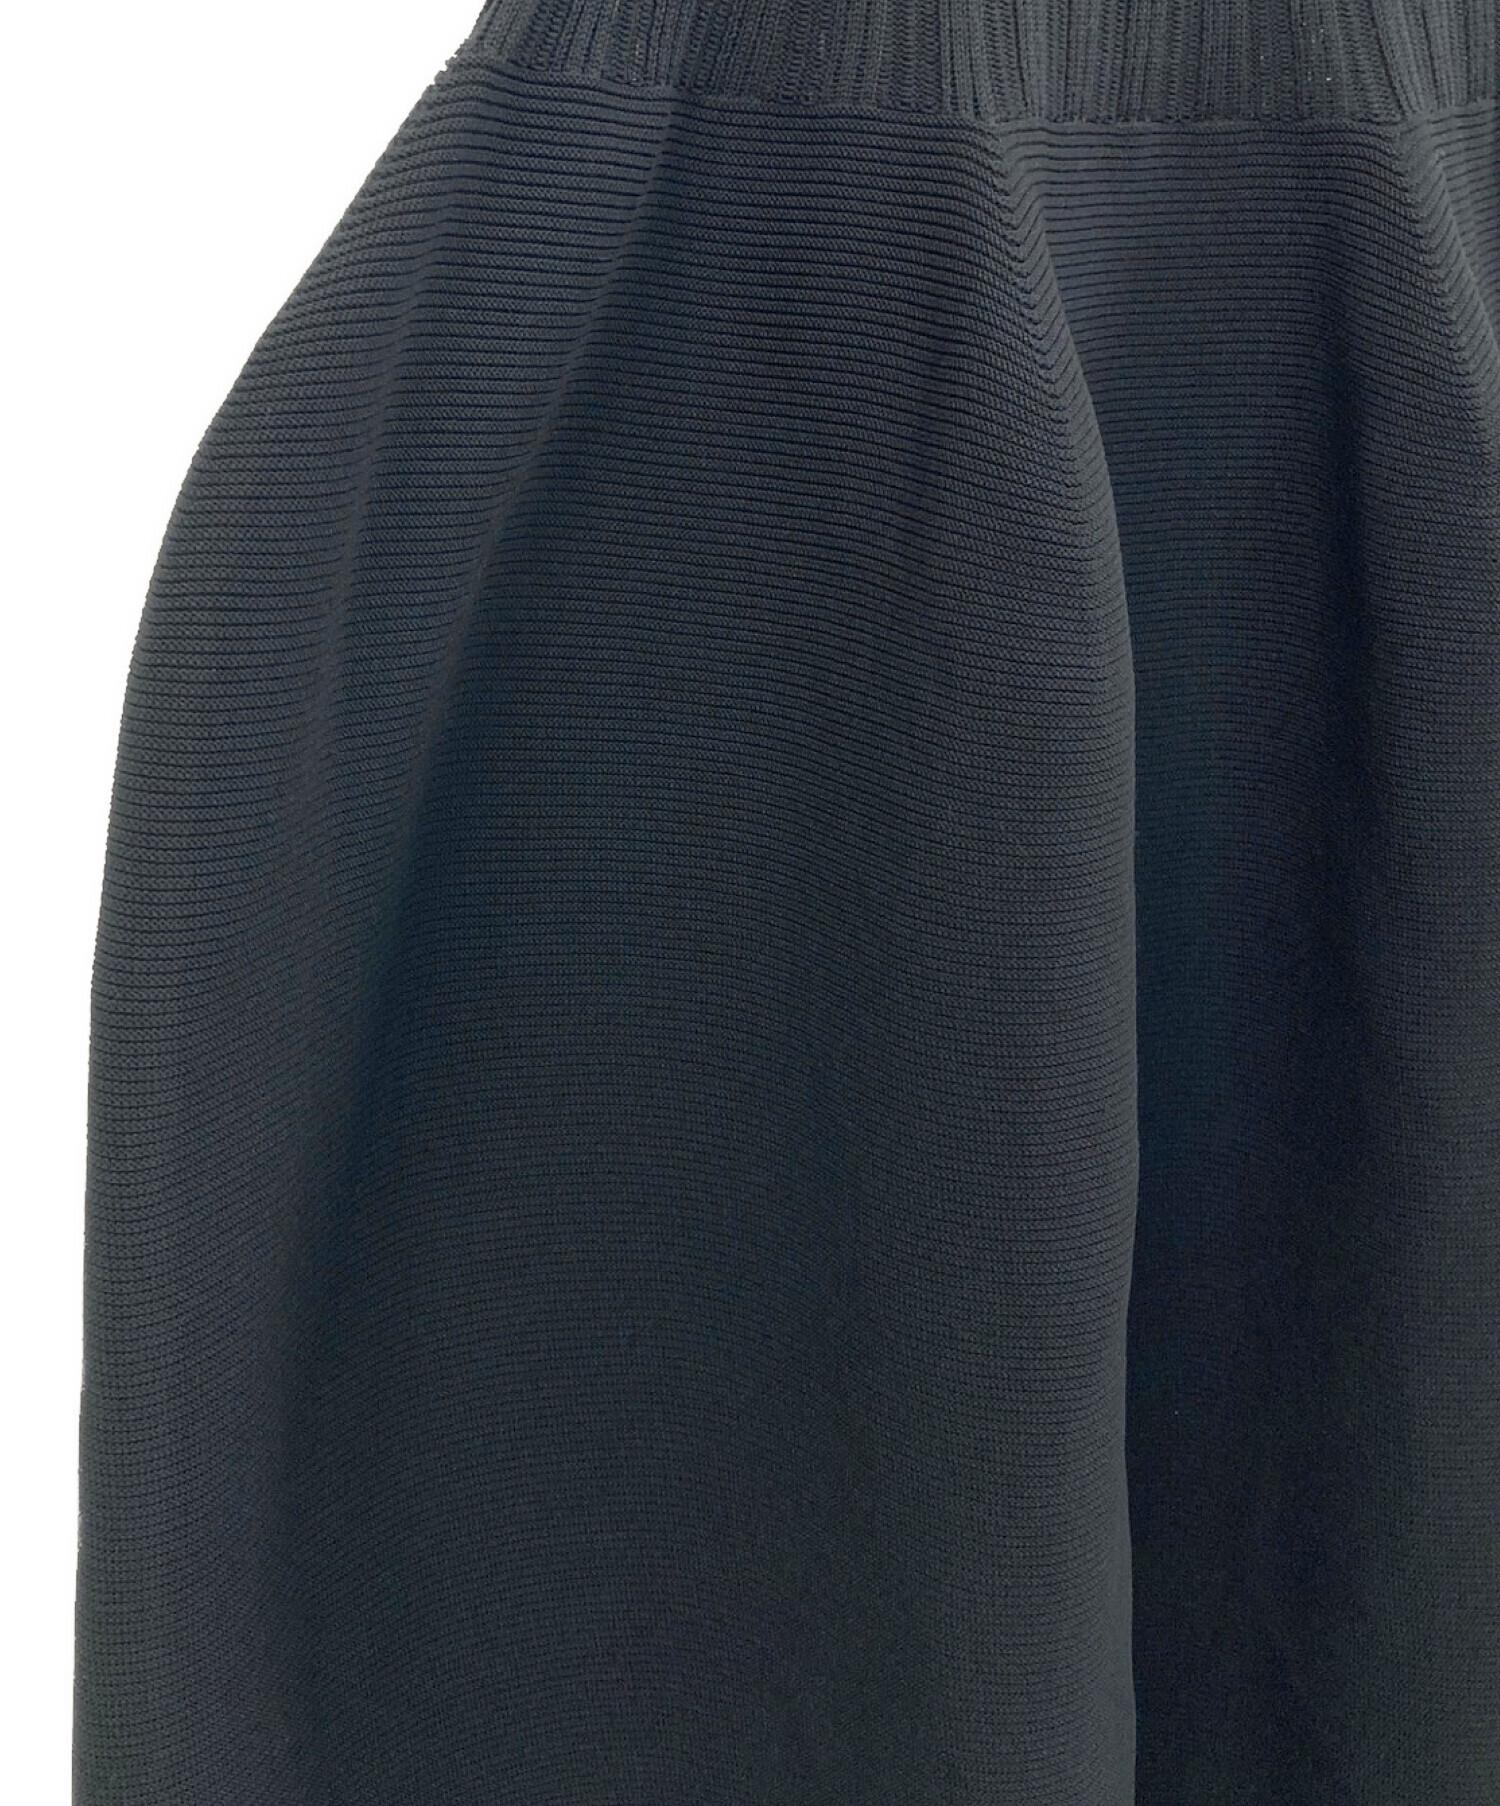 CFCL (シーエフシーエル) POTTERY DRESS 1 ブラック サイズ:1